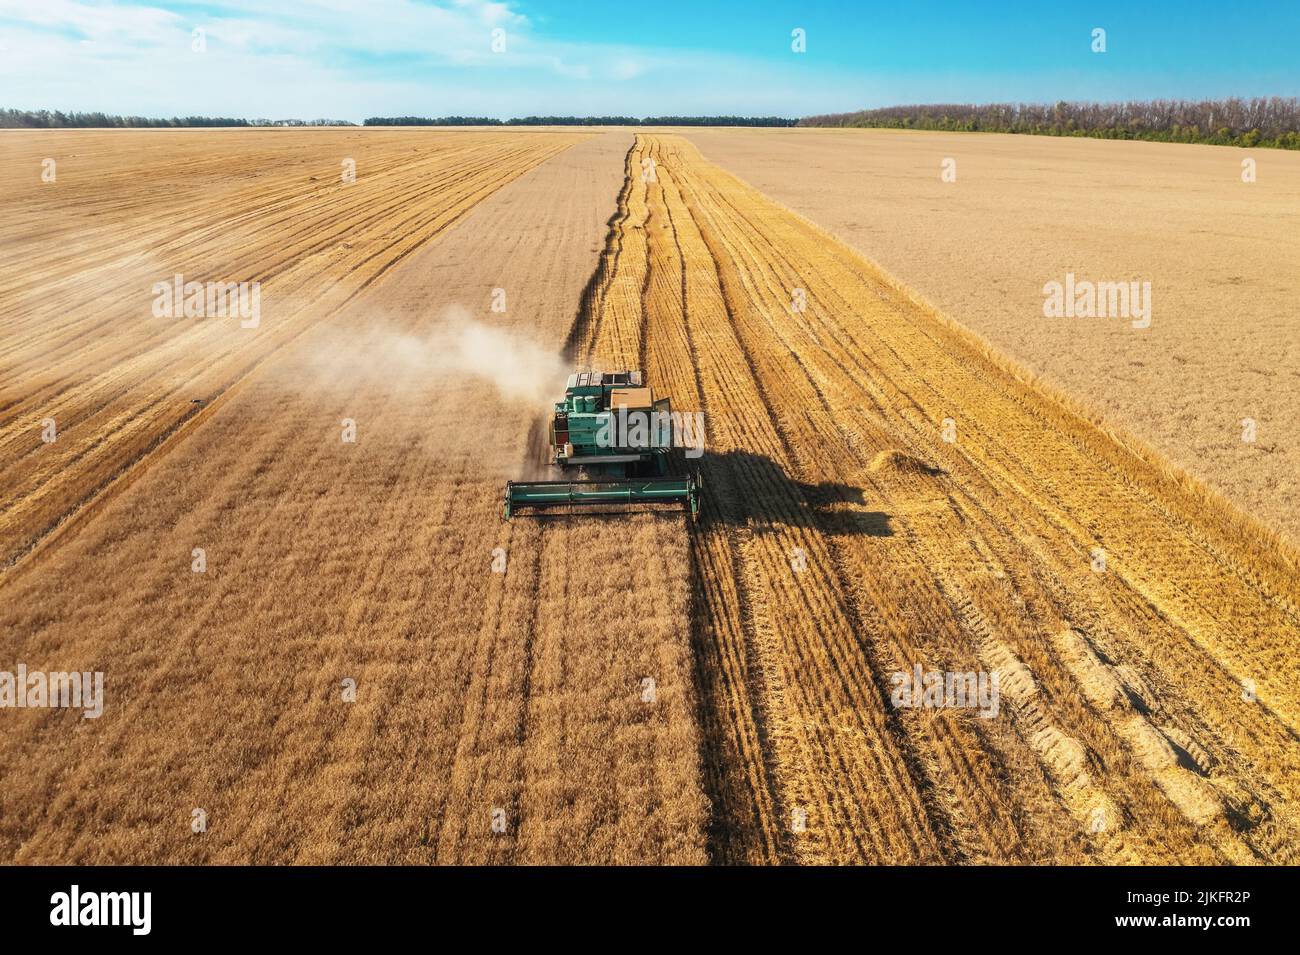 La moissonneuse-batteuse récolte une vue aérienne de blé mûr. Champ agricole et concept d'agriculture. Banque D'Images